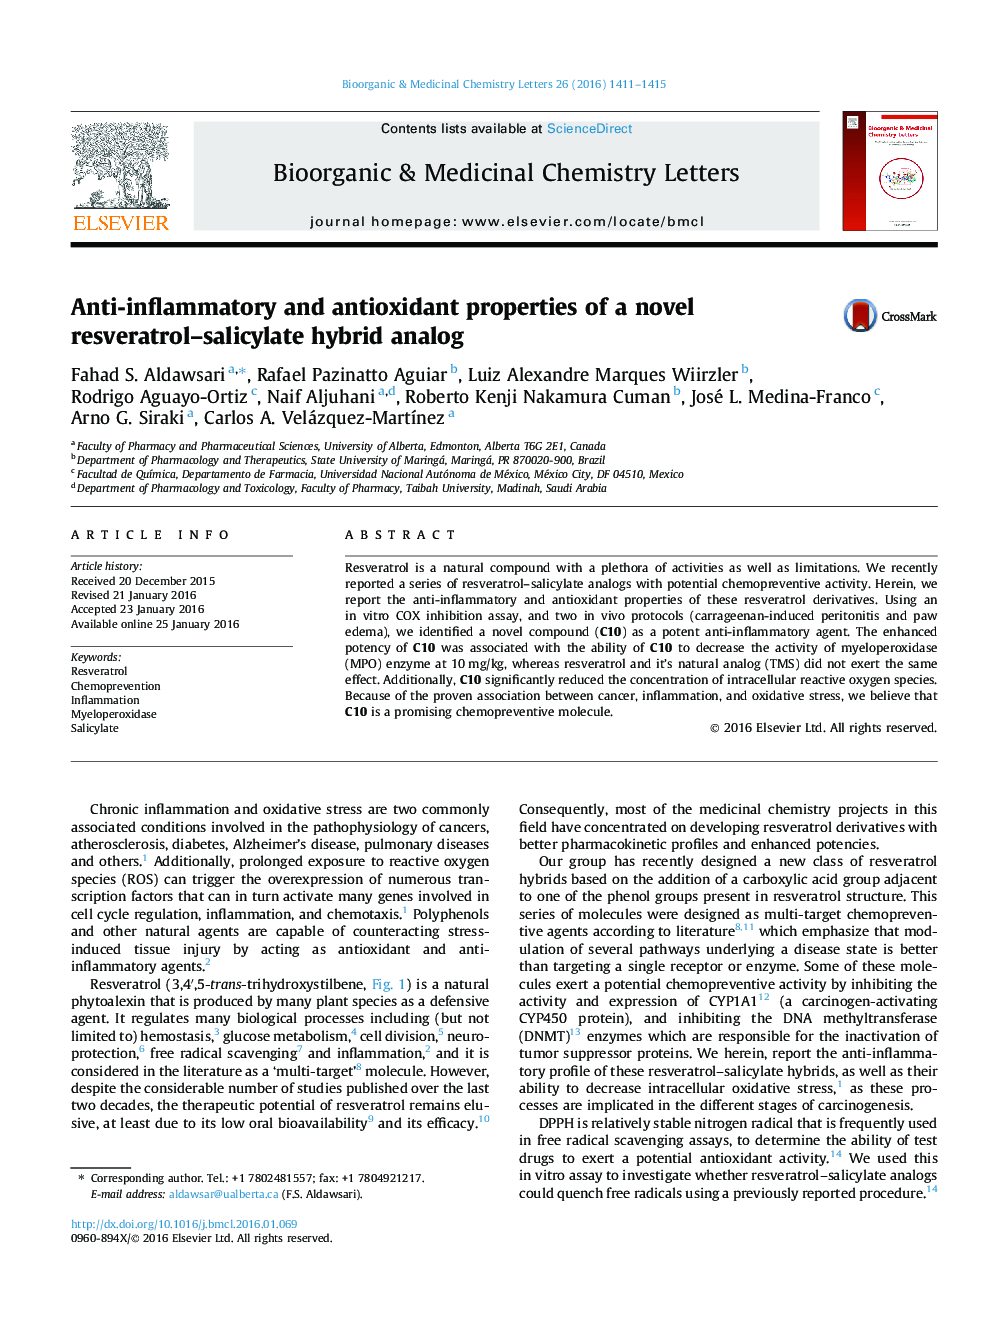 خواص ضد التهابی و آنتی اکسیدانی یک آنالوگ ترکیبی رسکوراترولا سالیسیلات جدید 